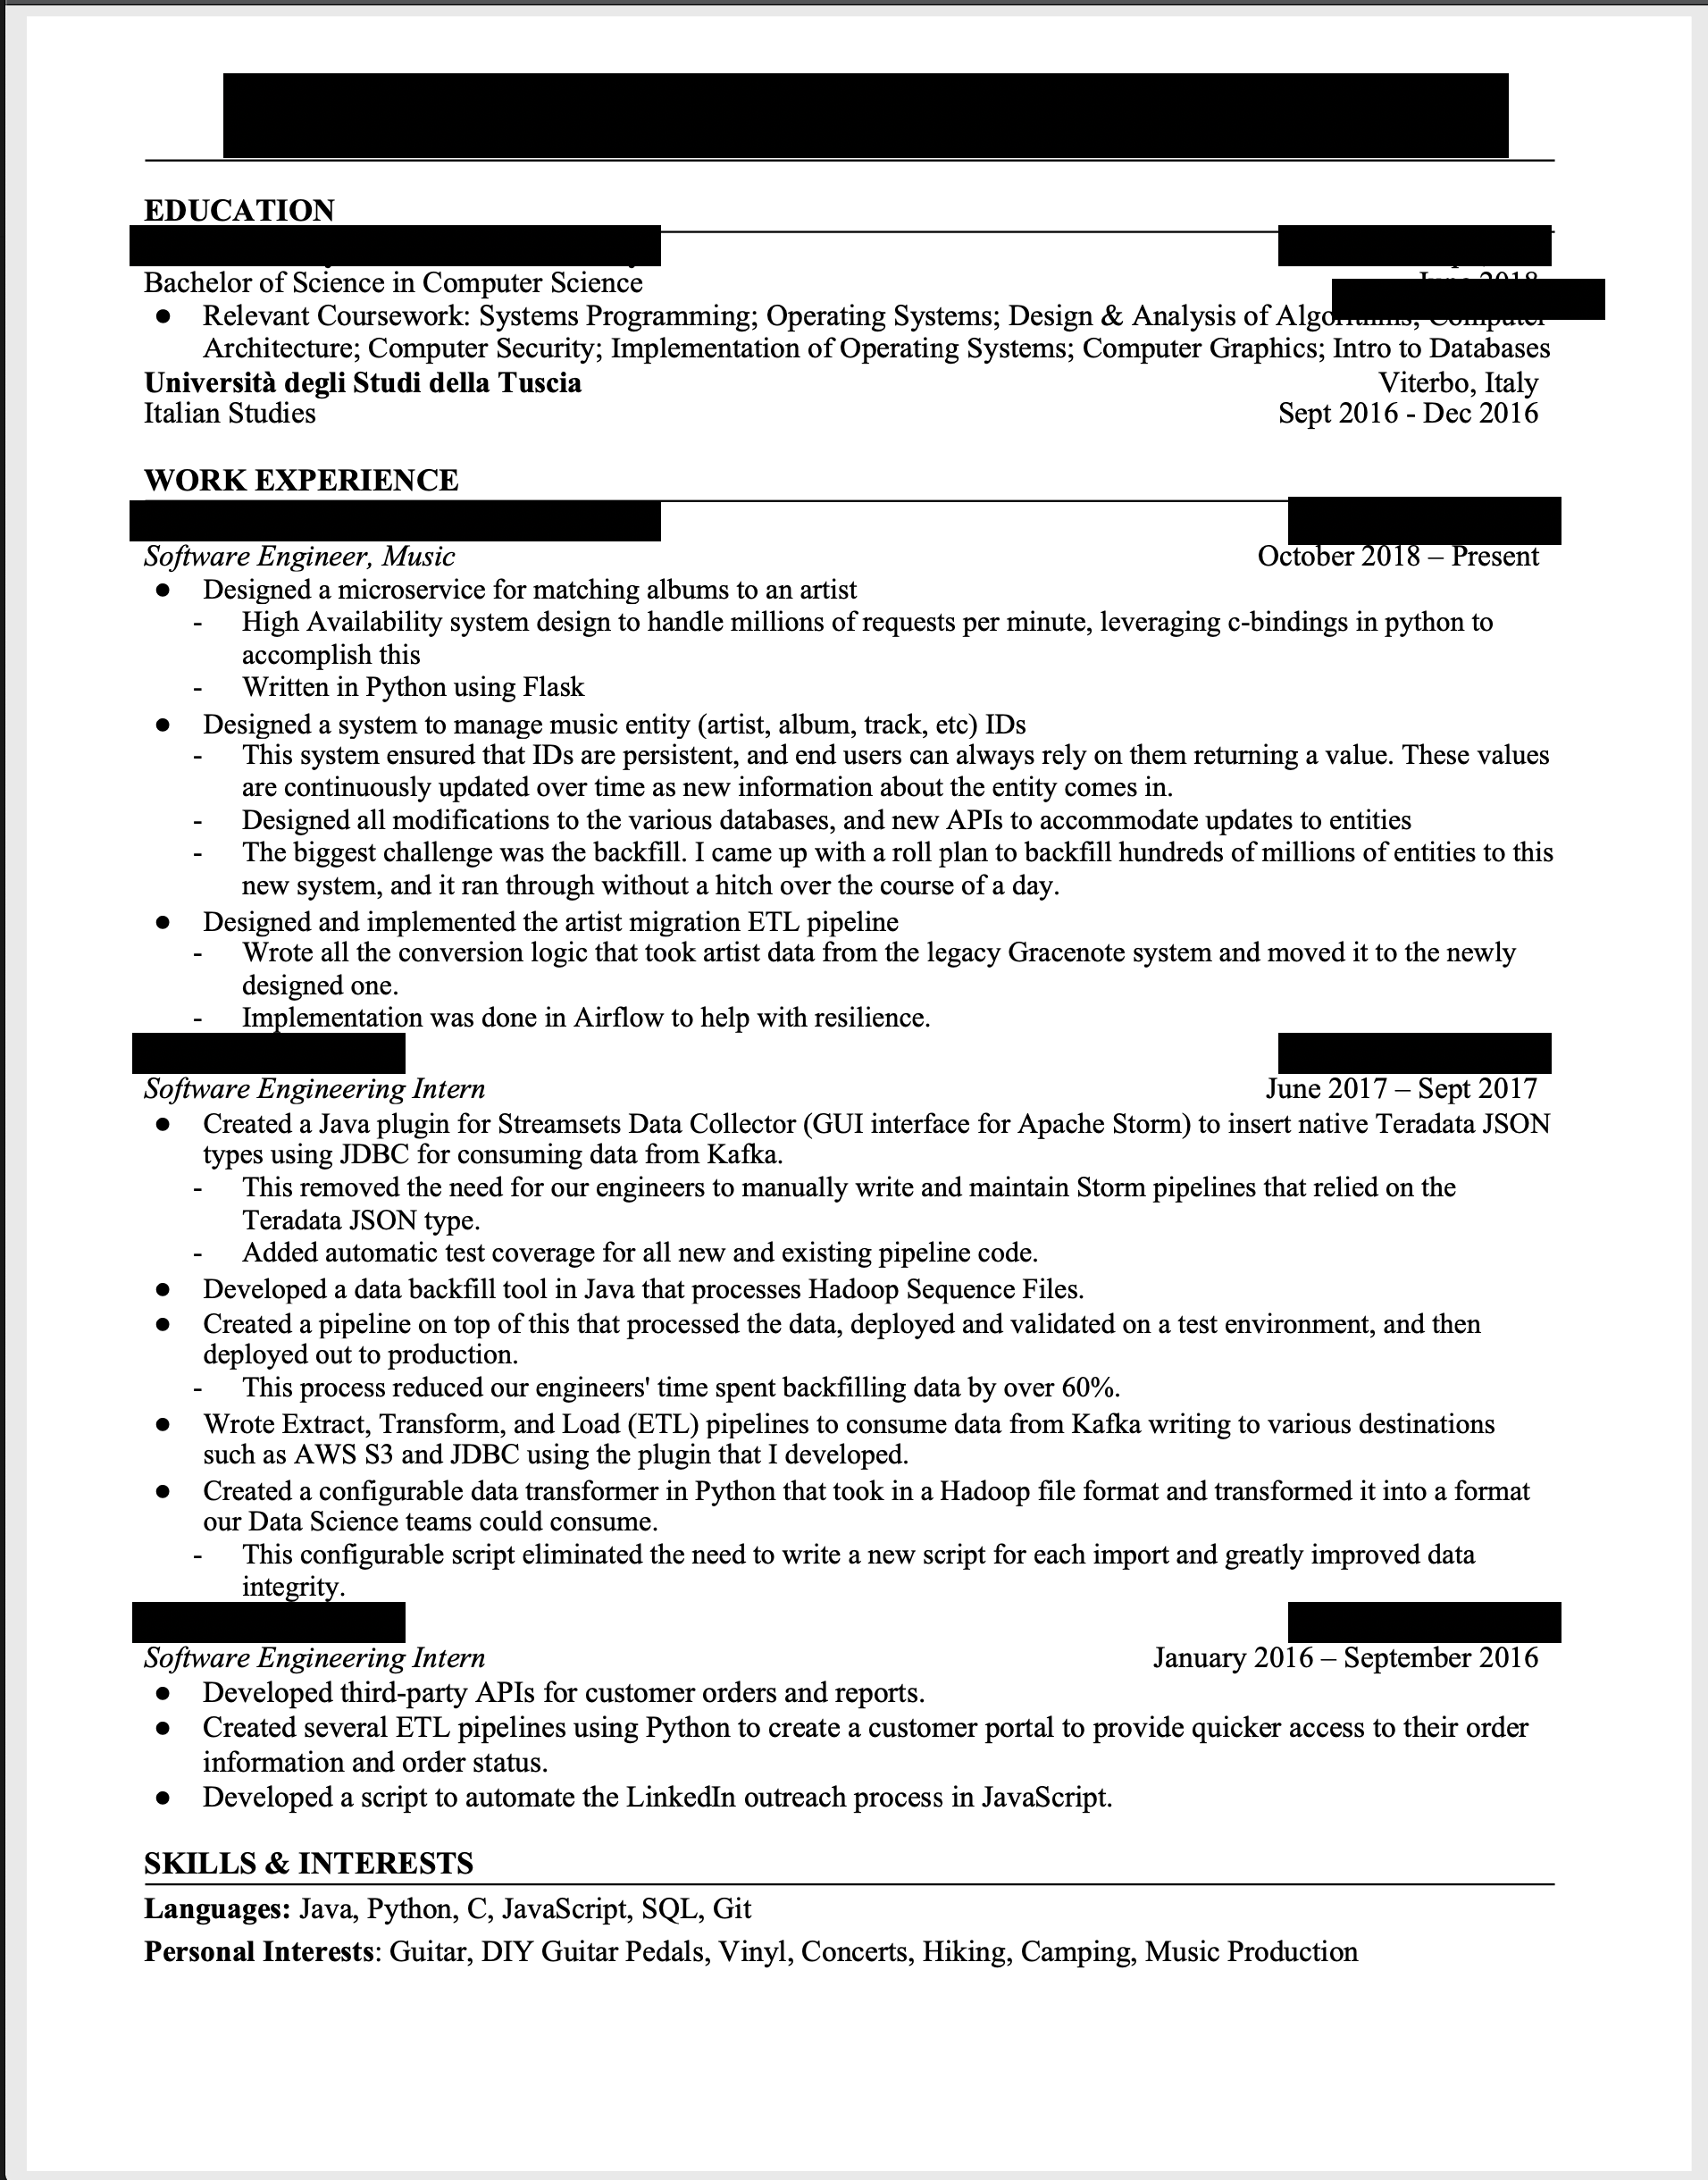 Help me improve my resume